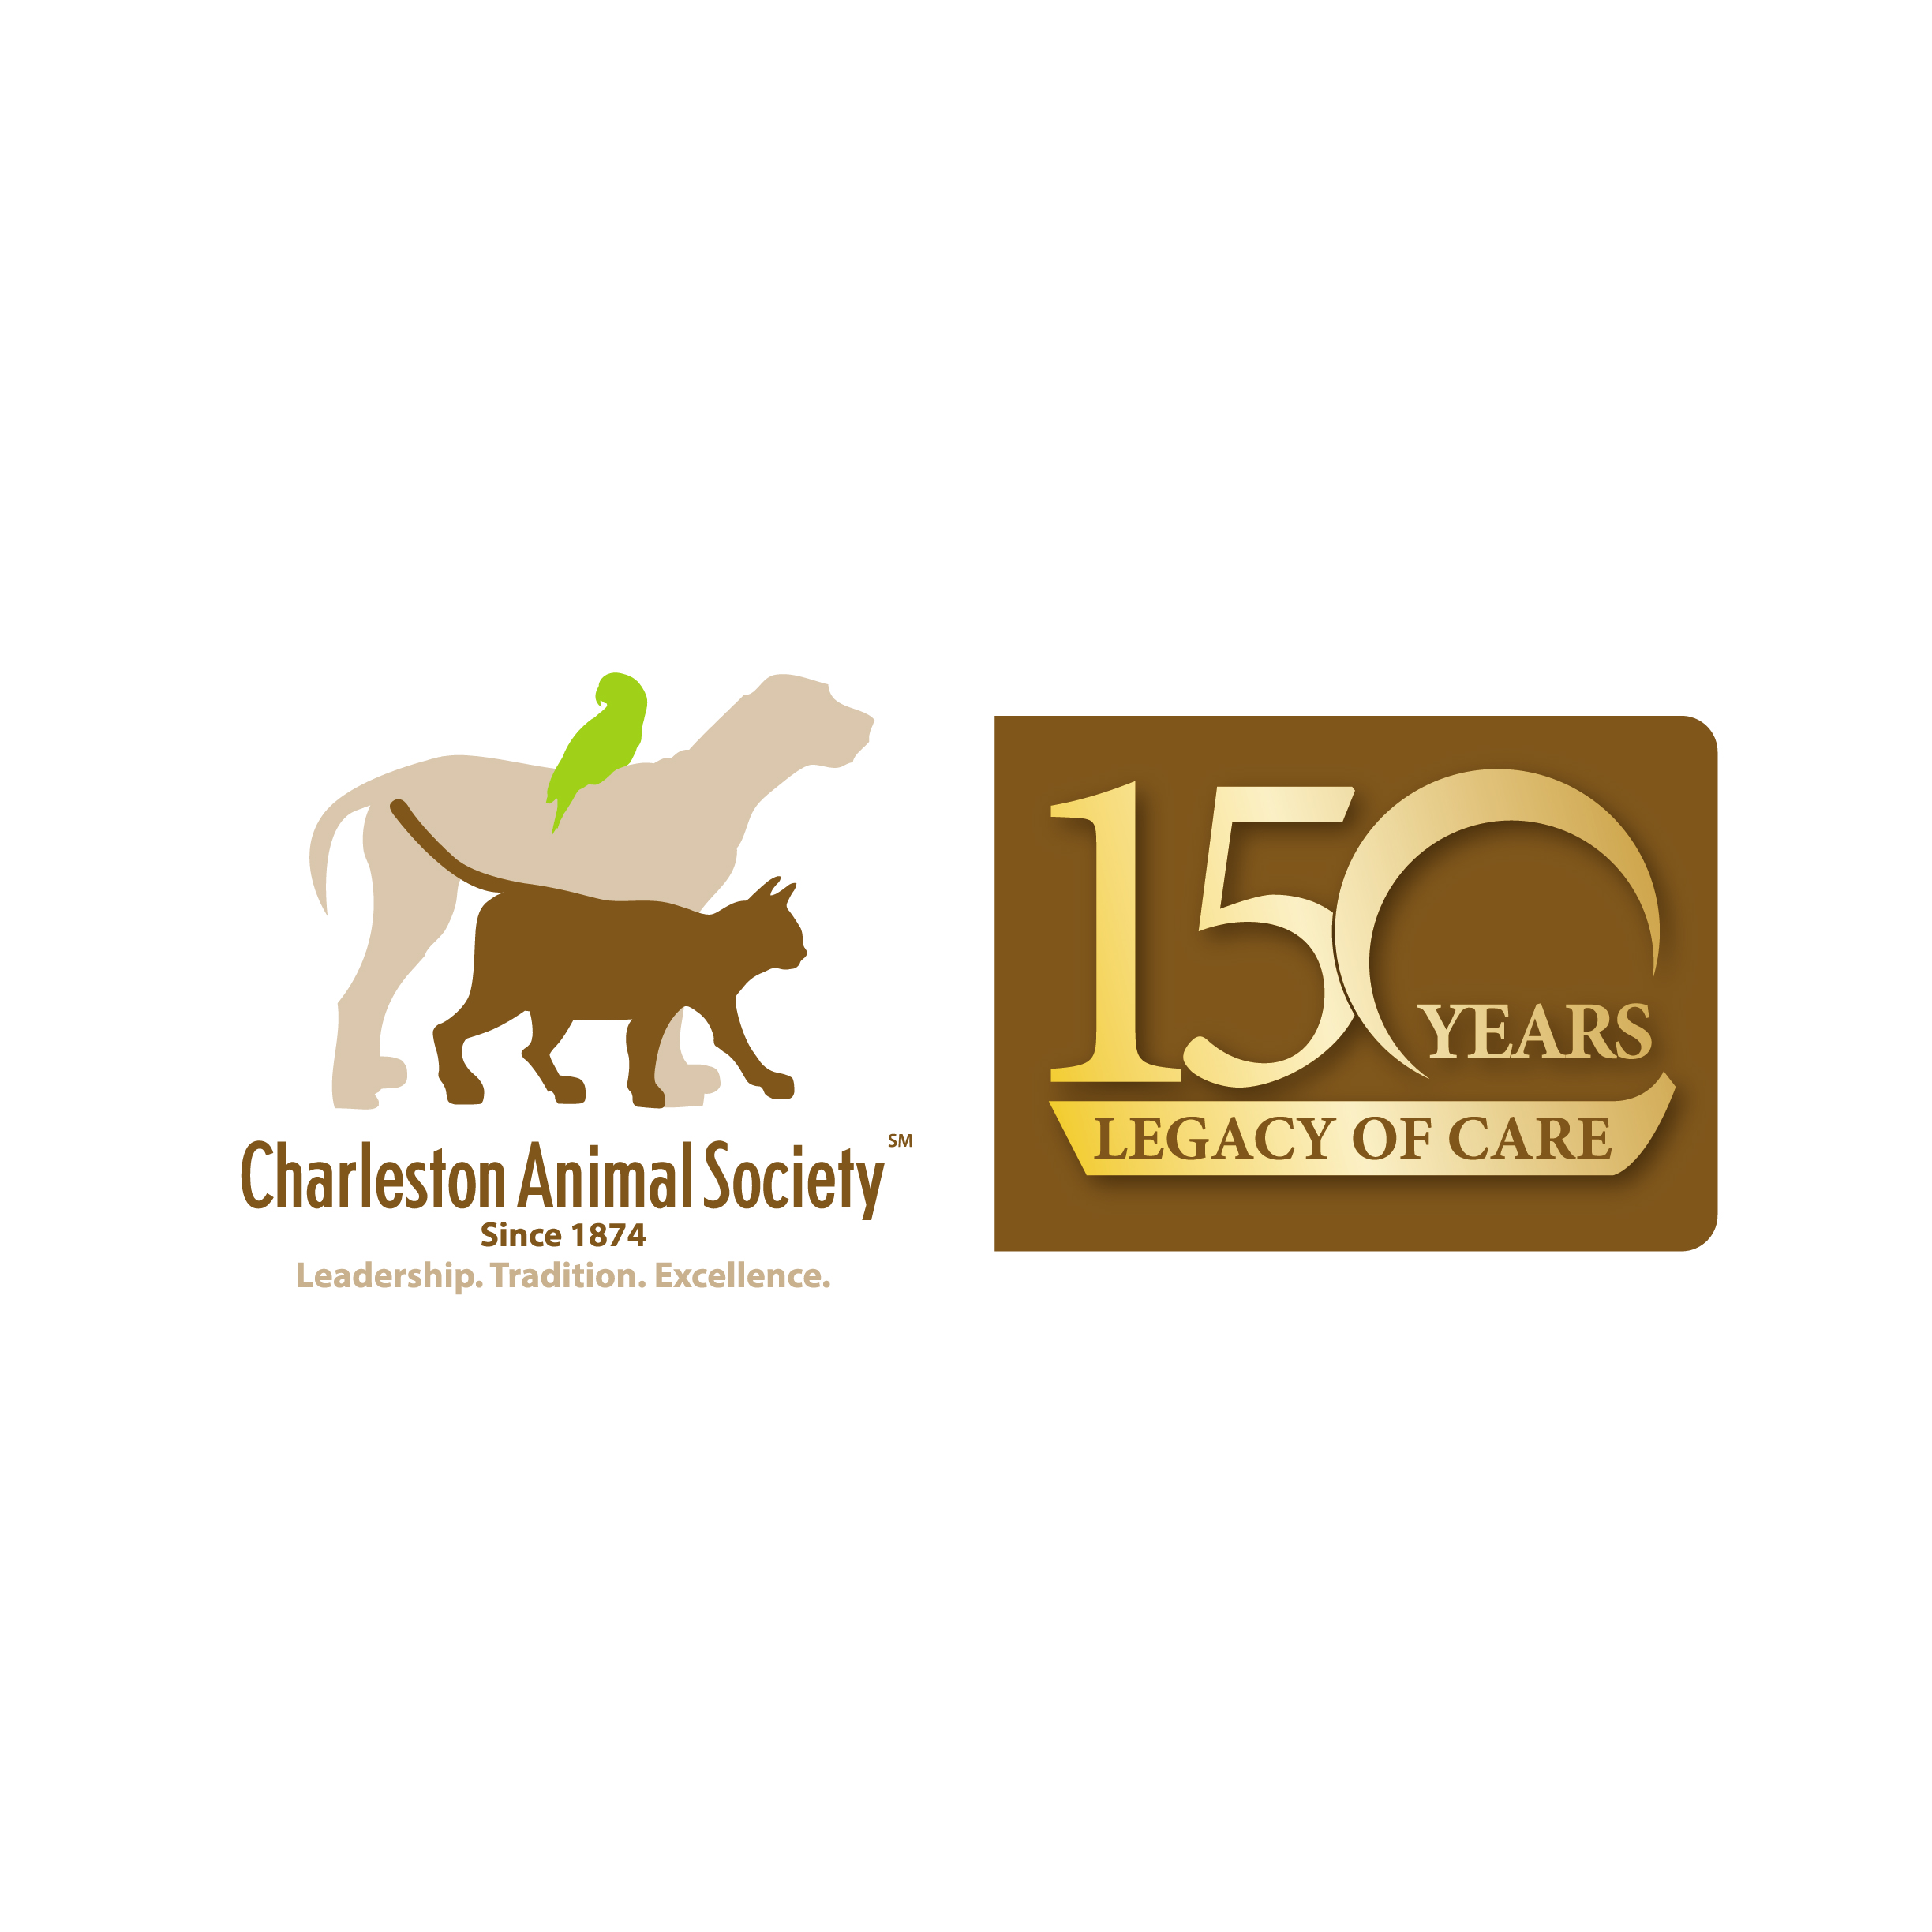 Charleston Animal Society